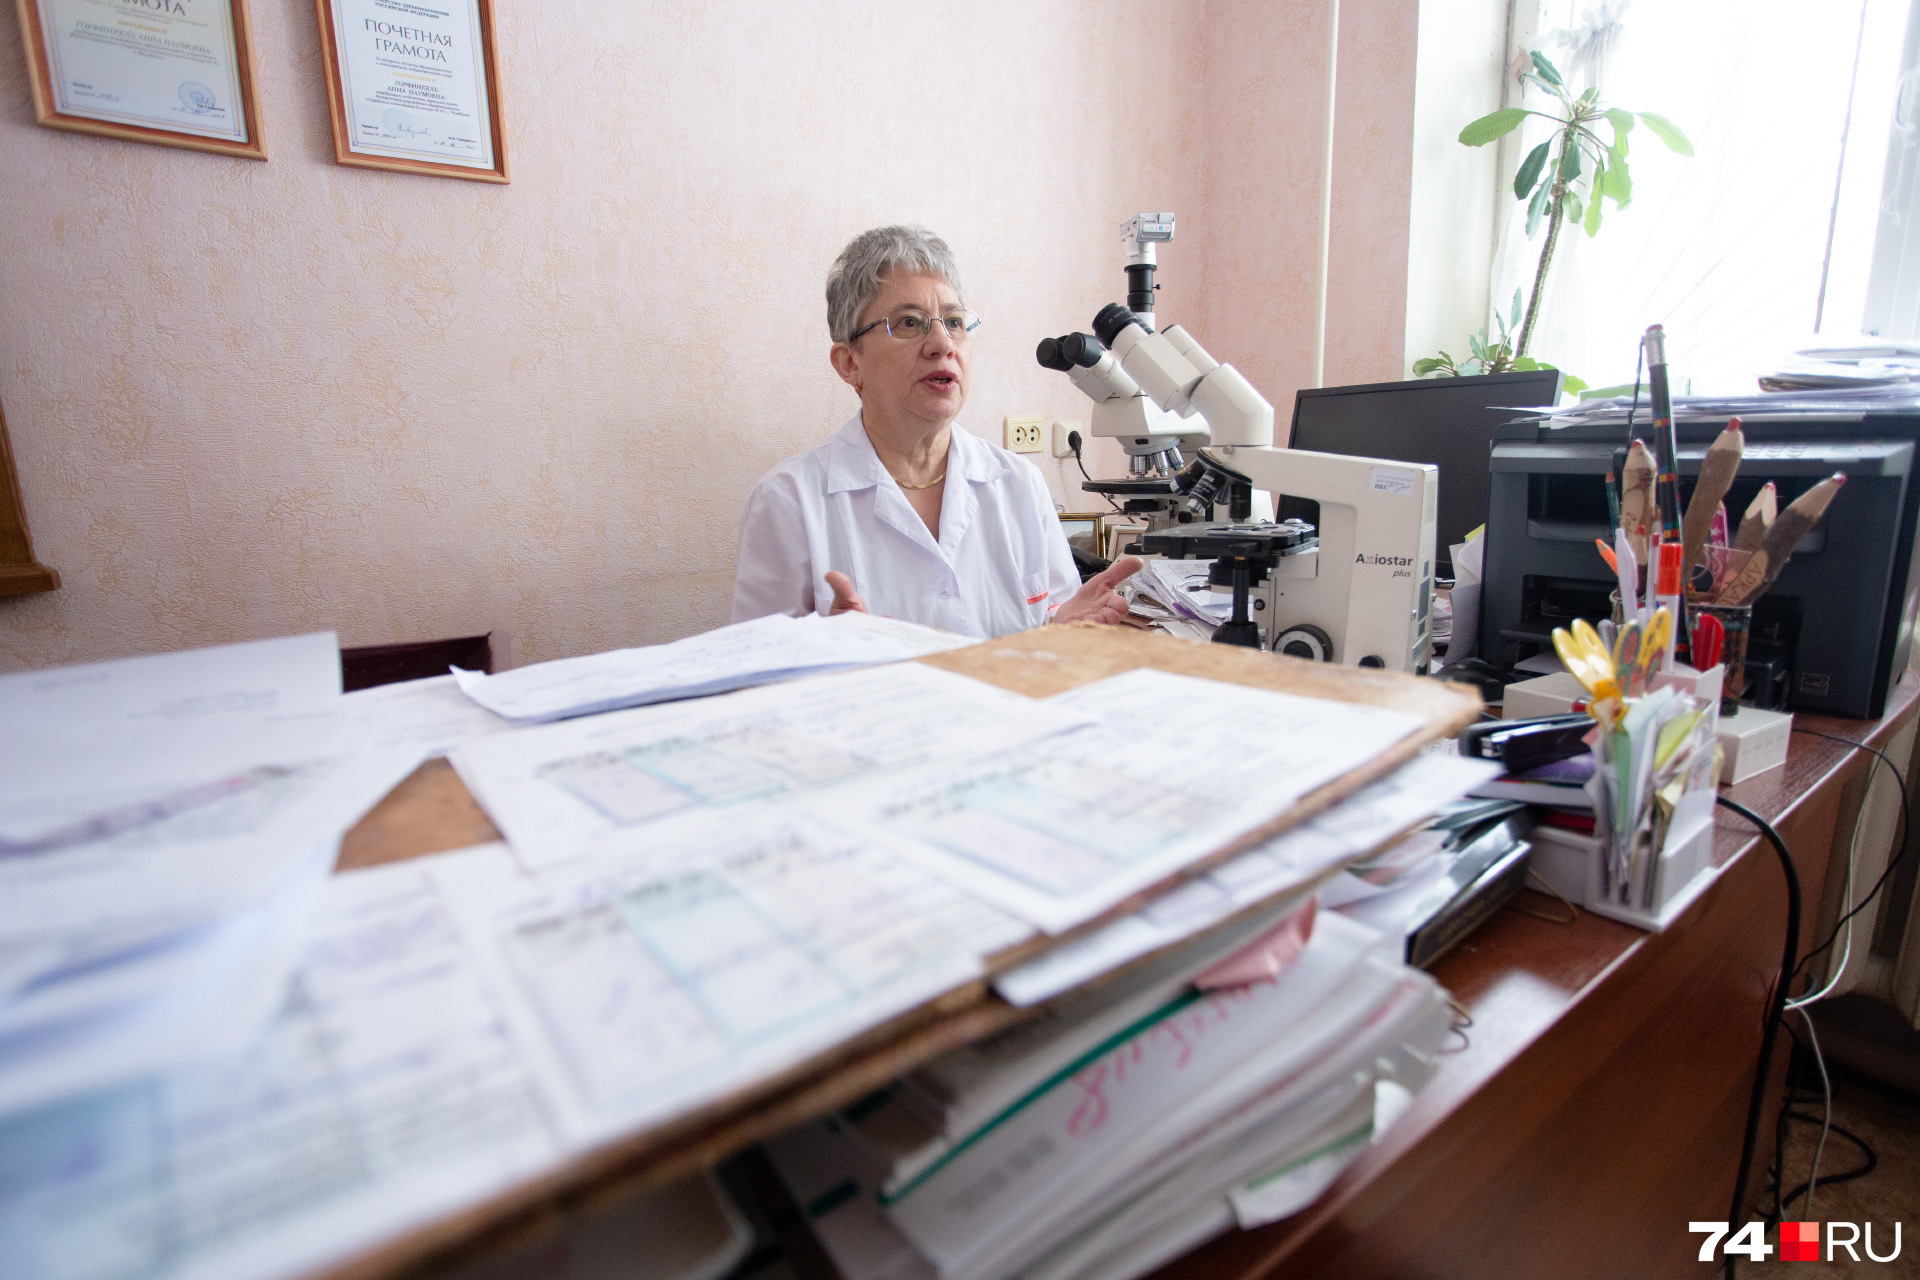 О числе пациентов, которым патологоанатомы помогают поставить диагноз, можно судить по внушительным стопкам карт и стёкол на рабочем столе